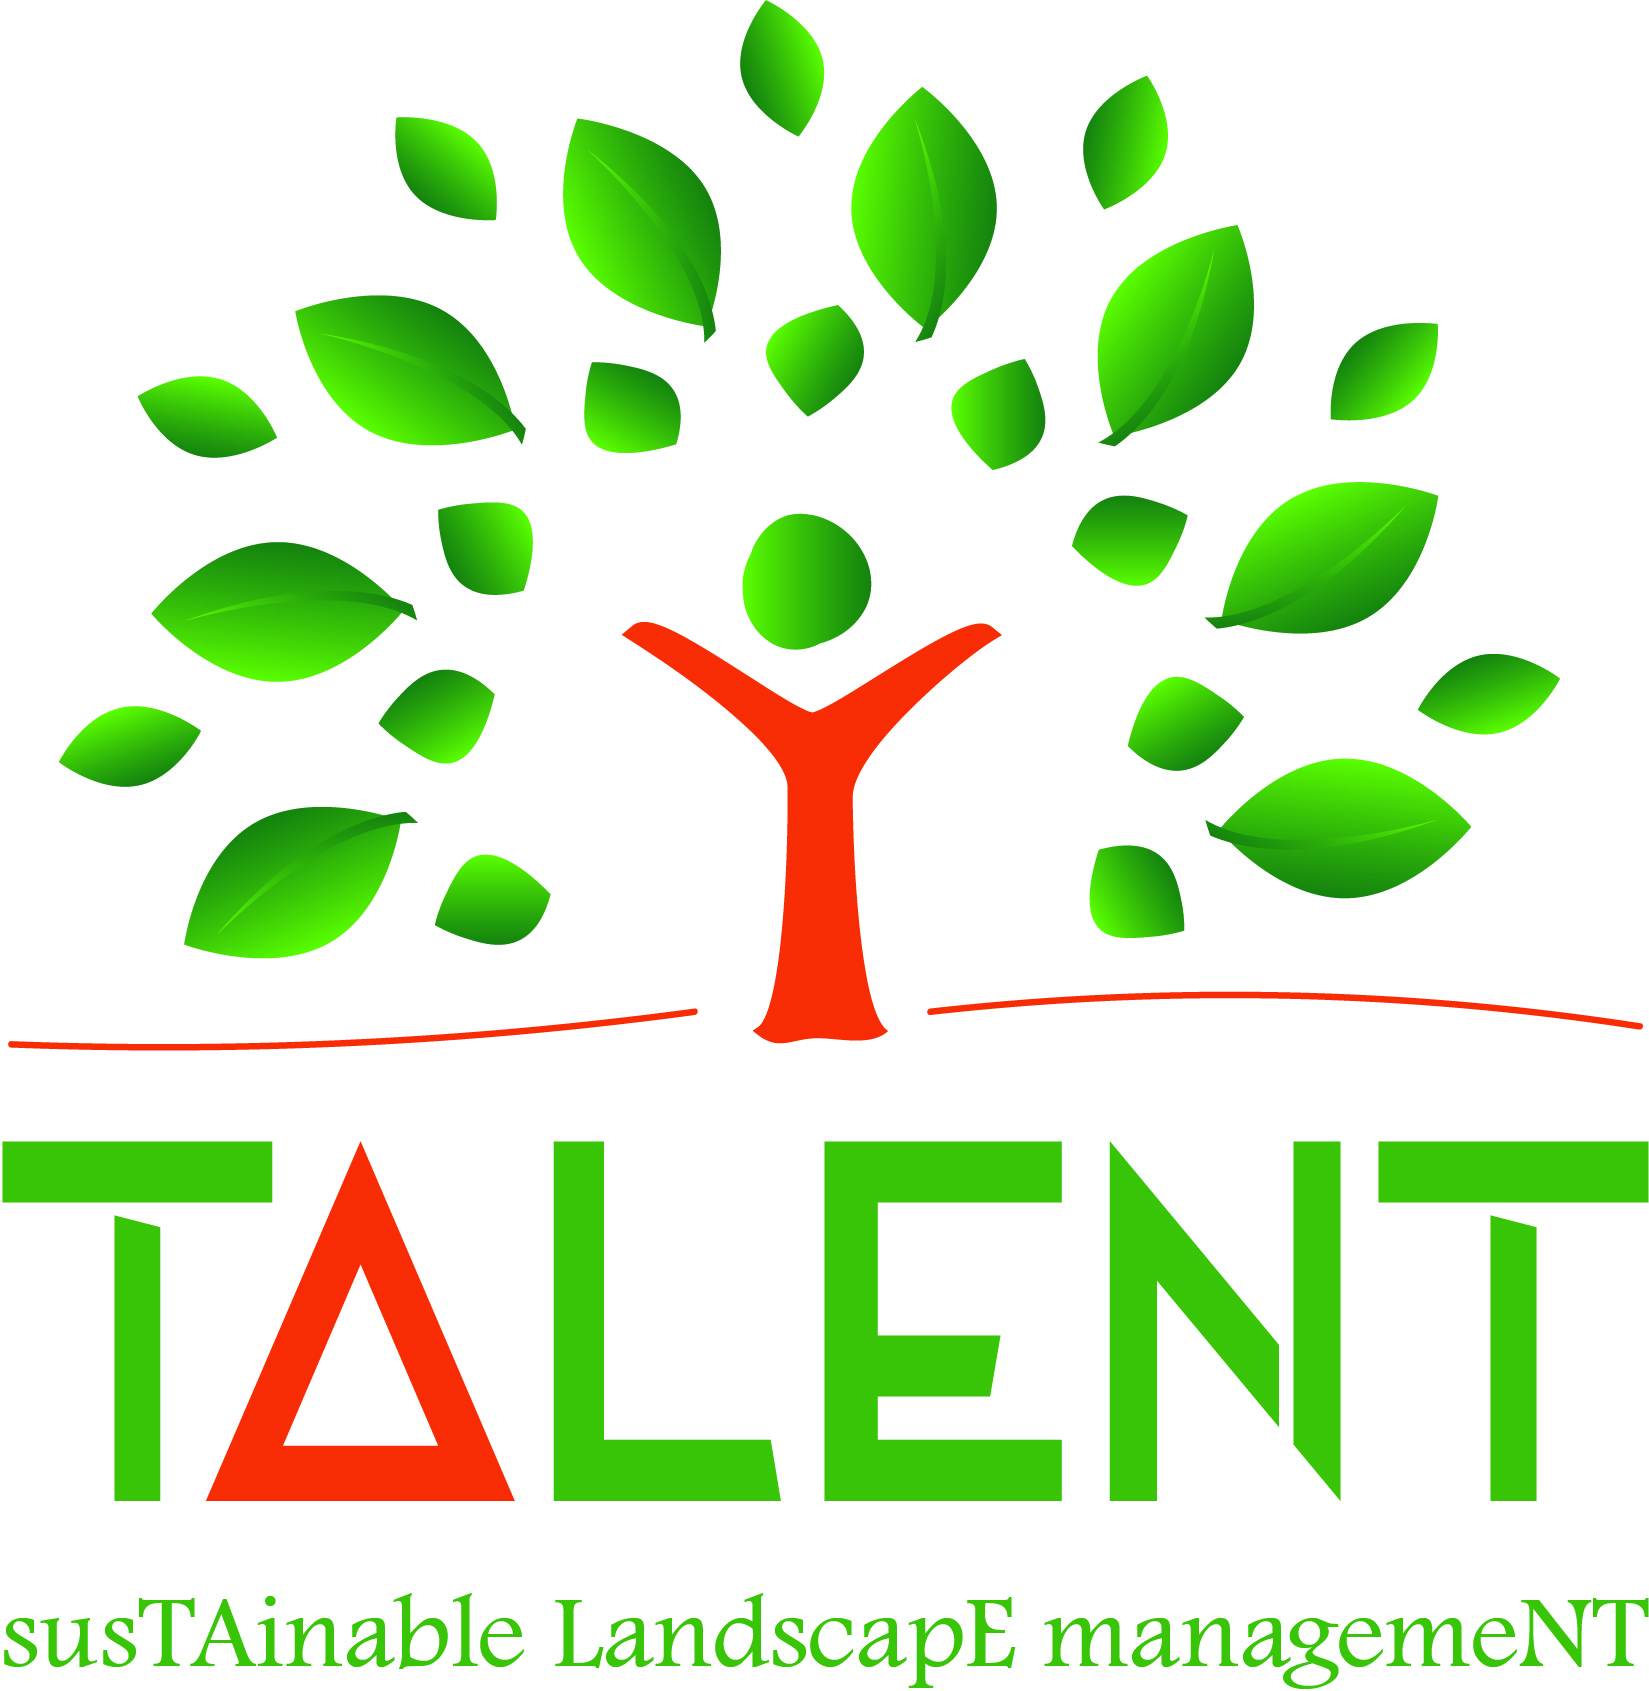 Logo / Resources - TALENT, susTAinable LandscapE managemeNT